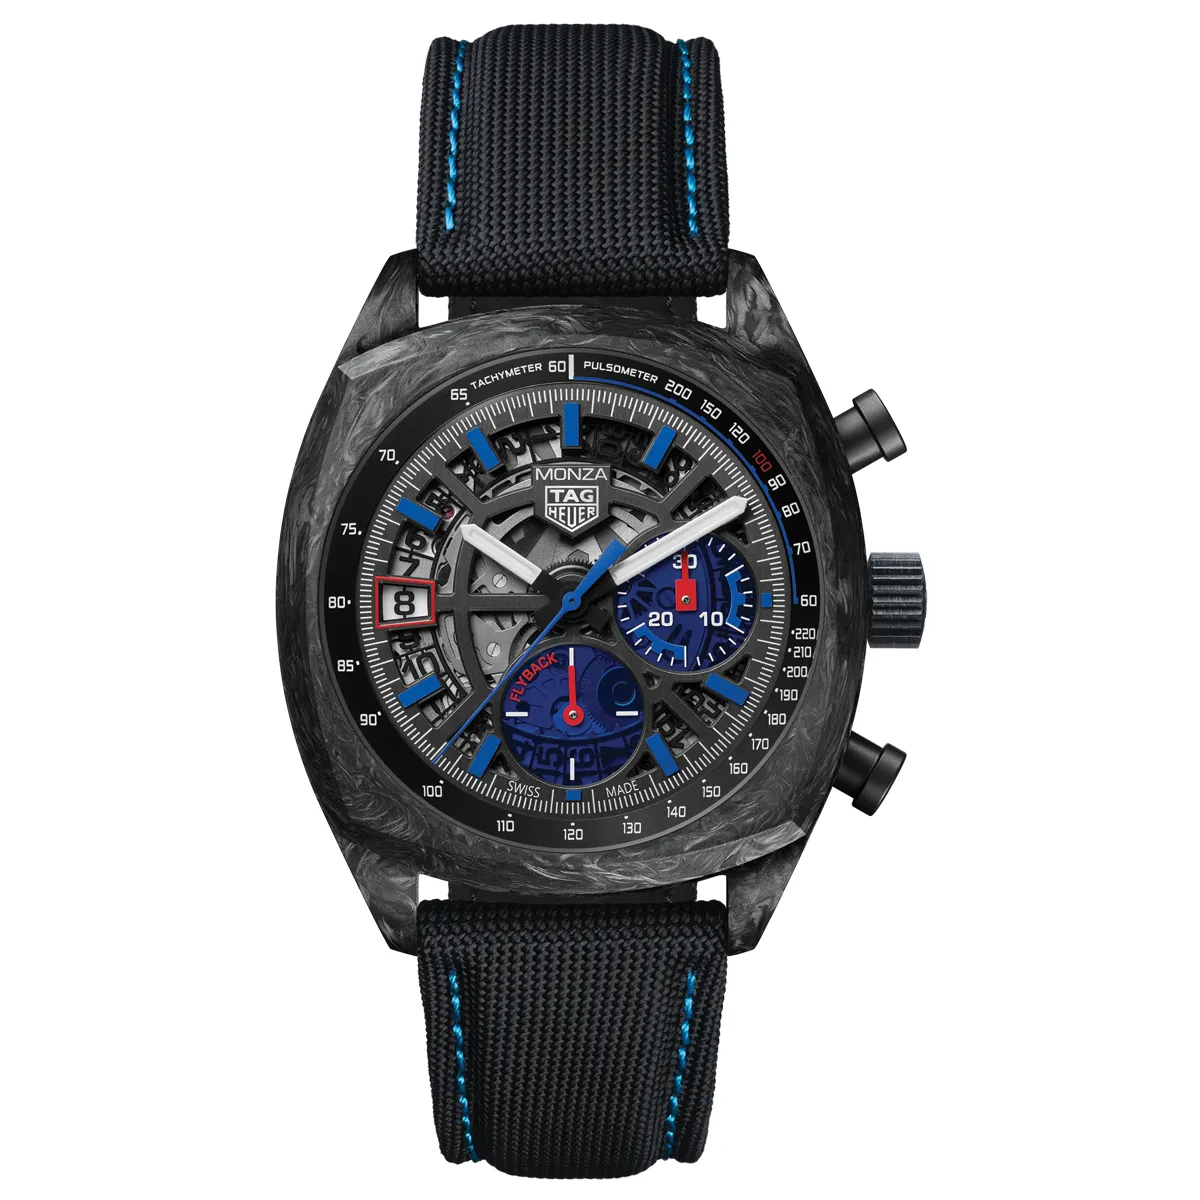 Đồng hồ Tag Heuer Monza Flyback Chronometer Special Edition CR5090.FN6001 mặt số màu xám. Dây đeo bằng vải dù. Thân vỏ bằng carbon.